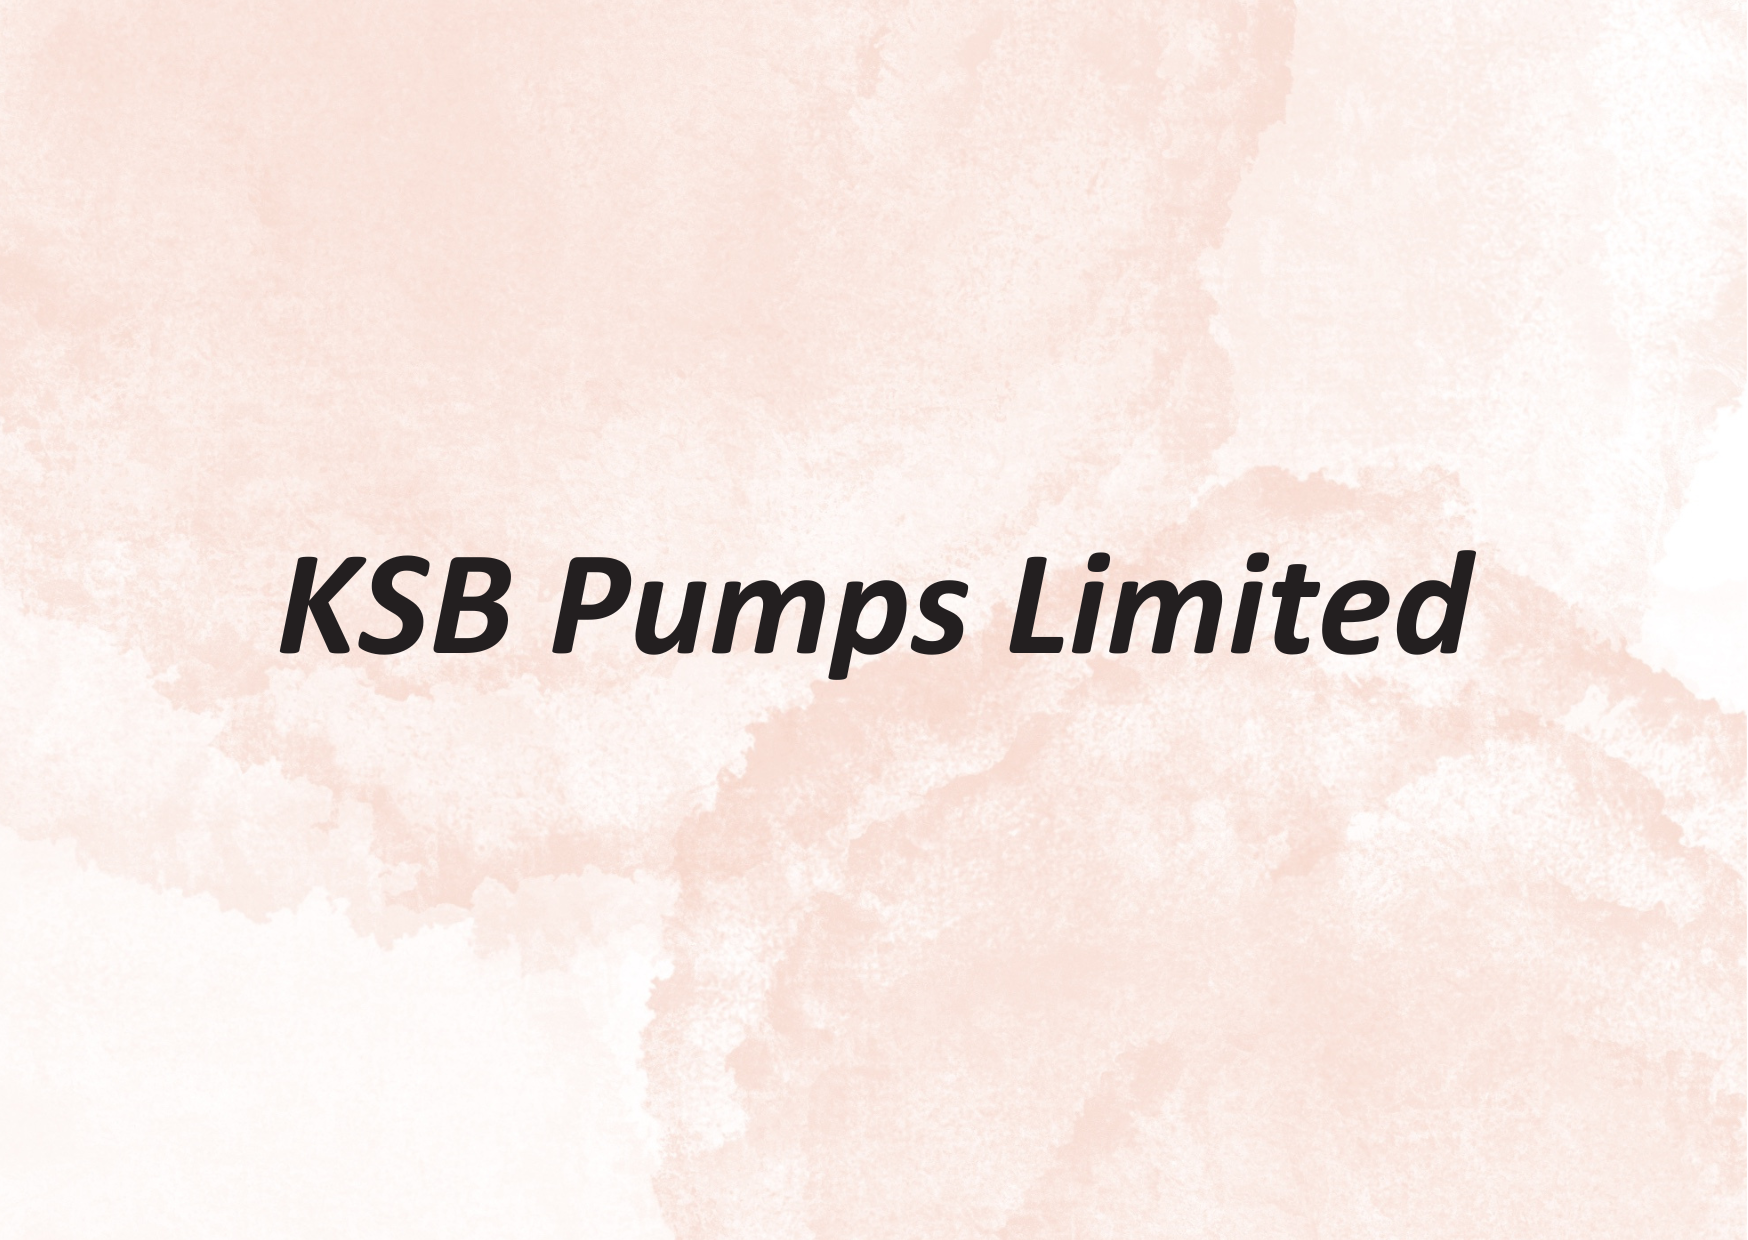 KSB PUMPS LTD 